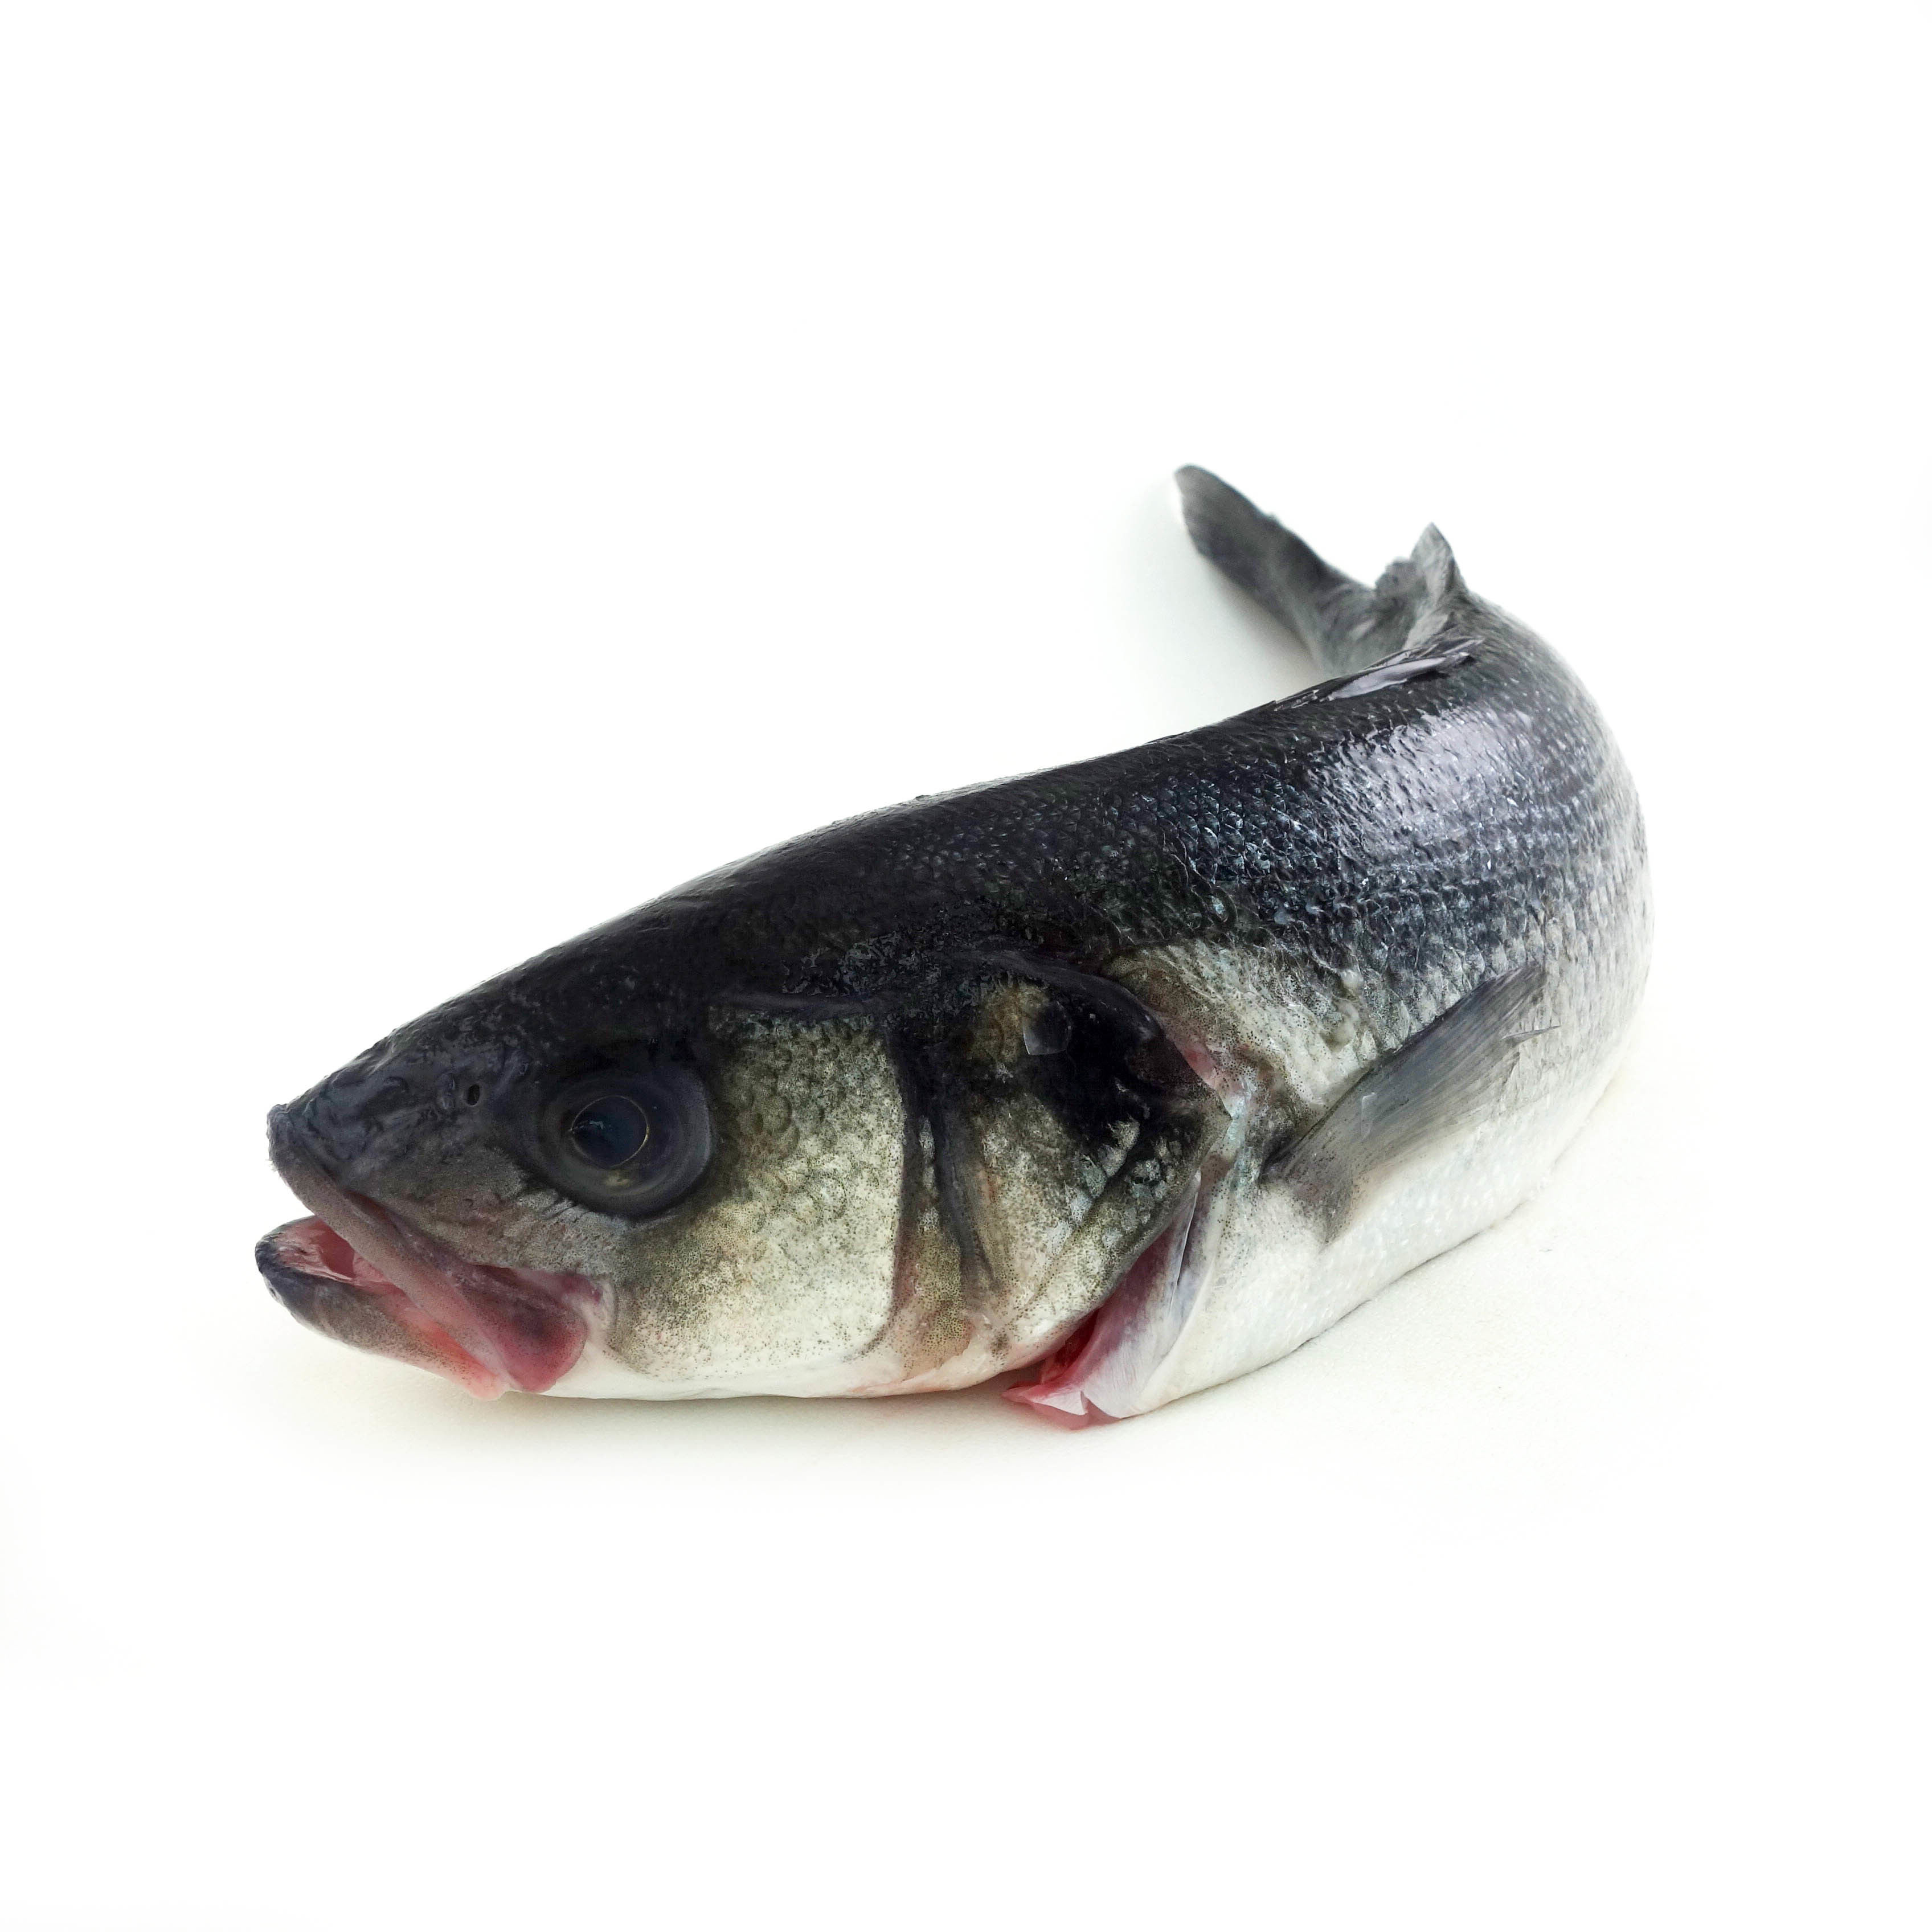 法國野生原條海鱸魚(Seabass)- 已去鰓及內臟